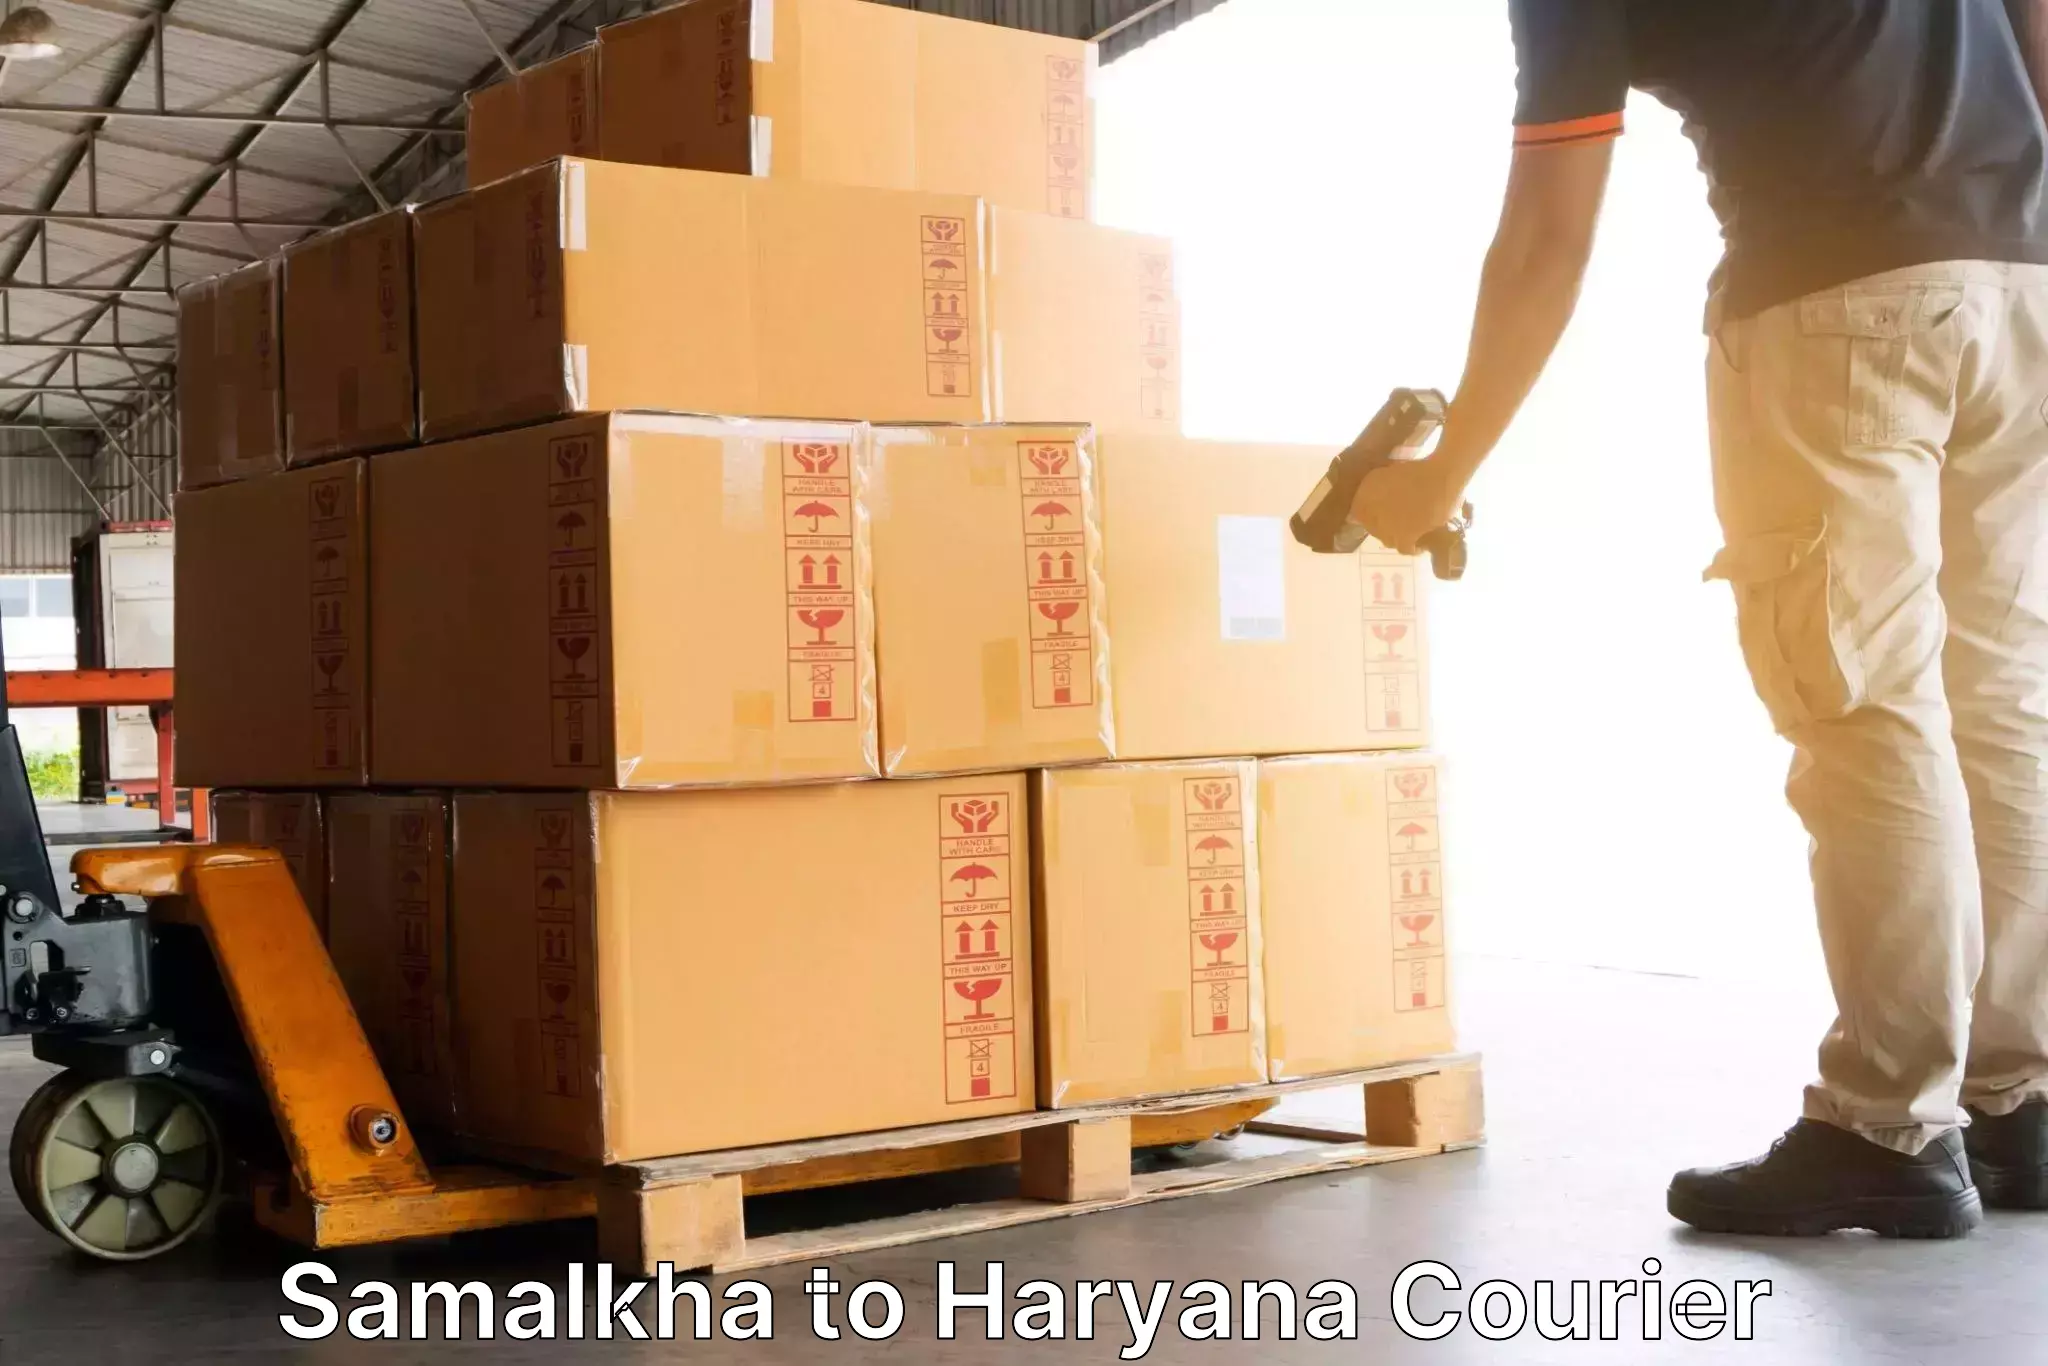 Customized shipping options Samalkha to Odhan